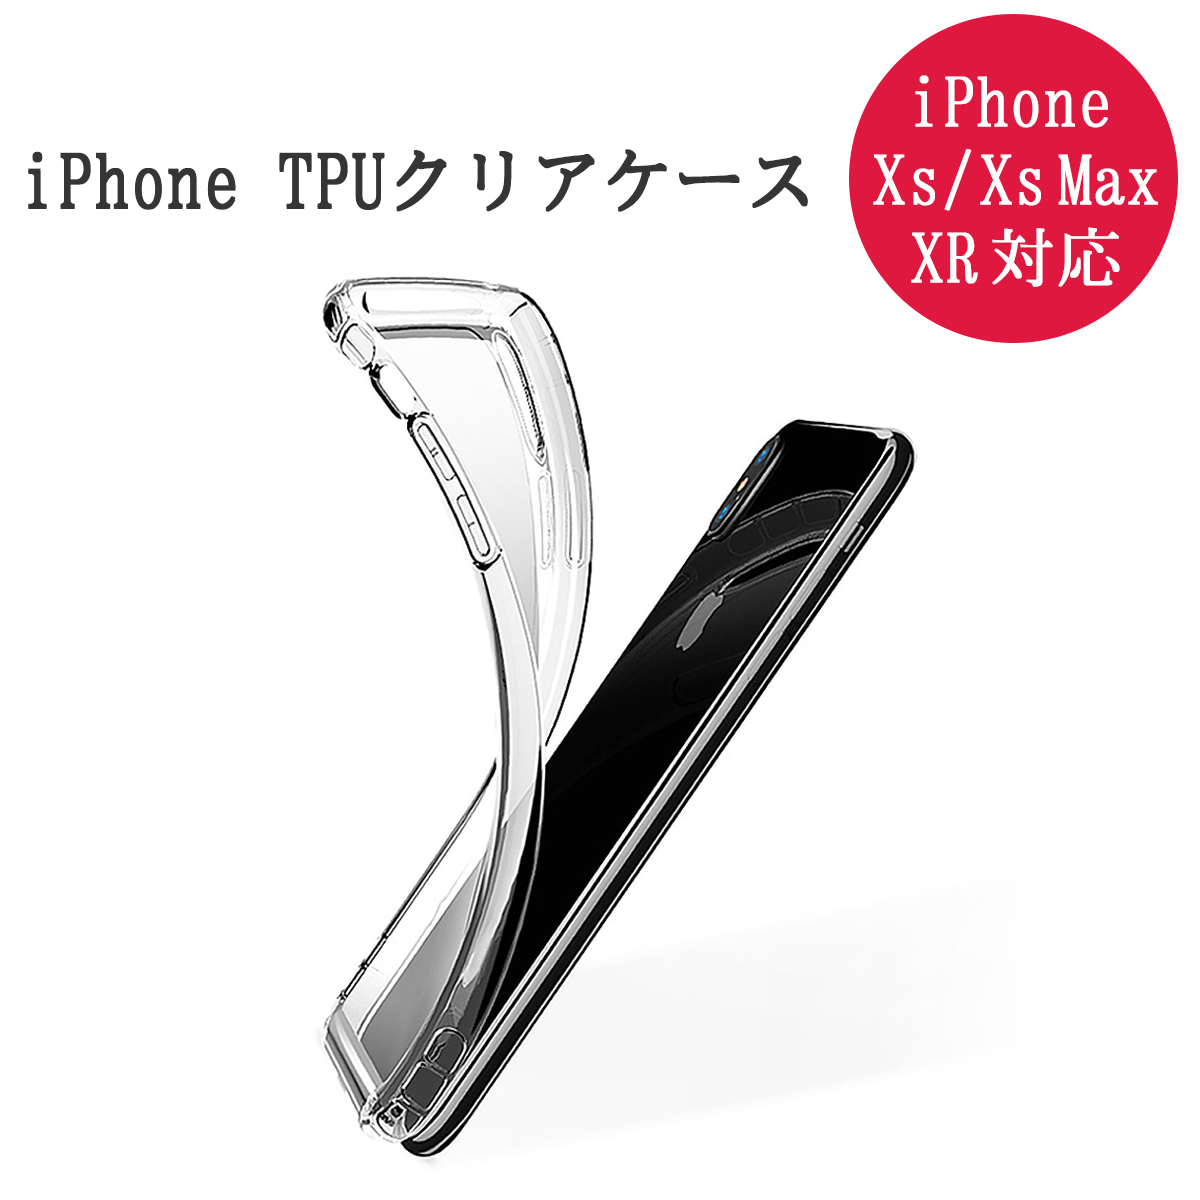 卸売B2B iPhone X XS MAX XR 8 7 Plus SE第2世代 極薄型 TPUケース アイフォン スマートフォン ケース 衝撃吸収 傷防止 スリップ防止 放熱 防水 防塵 SDM便送料無料 1ヶ月保証 K&M